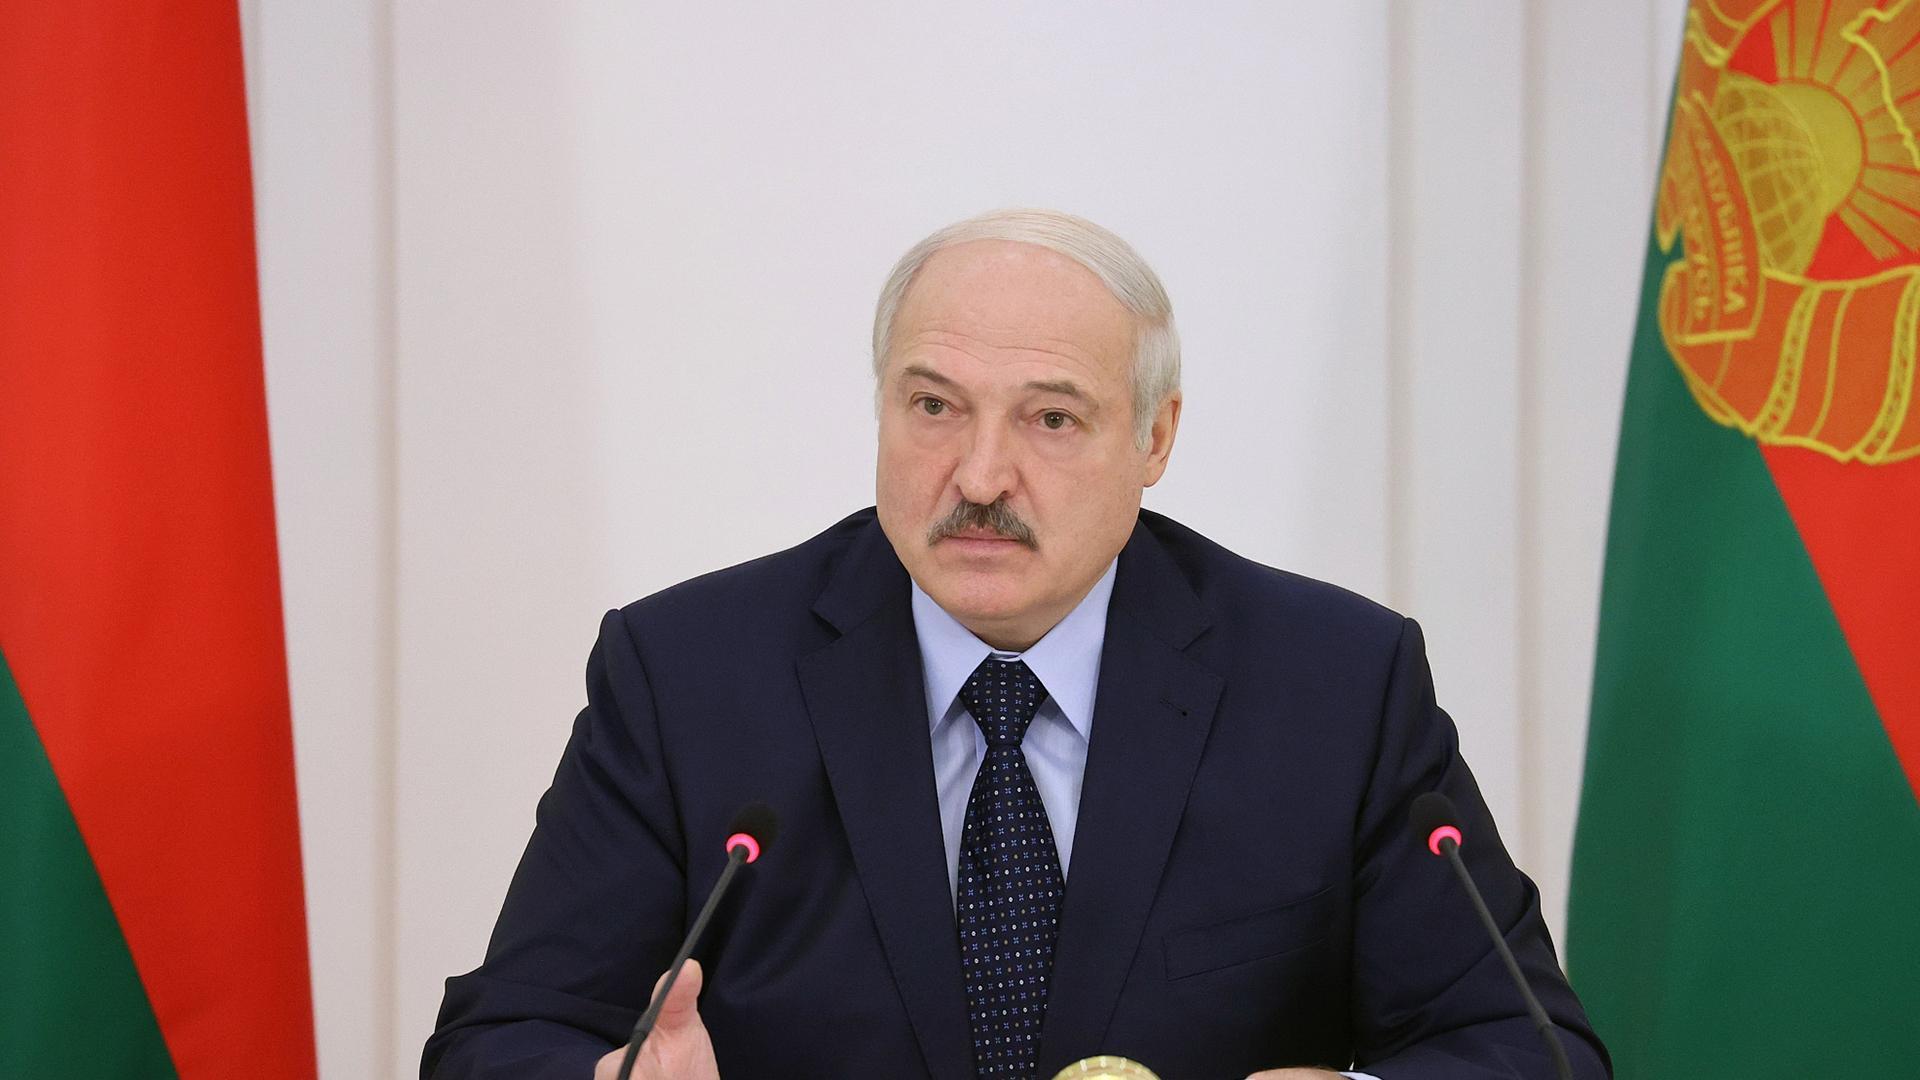 Мы никого там не убивали и убивать не собираемся - Лукашенко об участии Беларуси в СВО